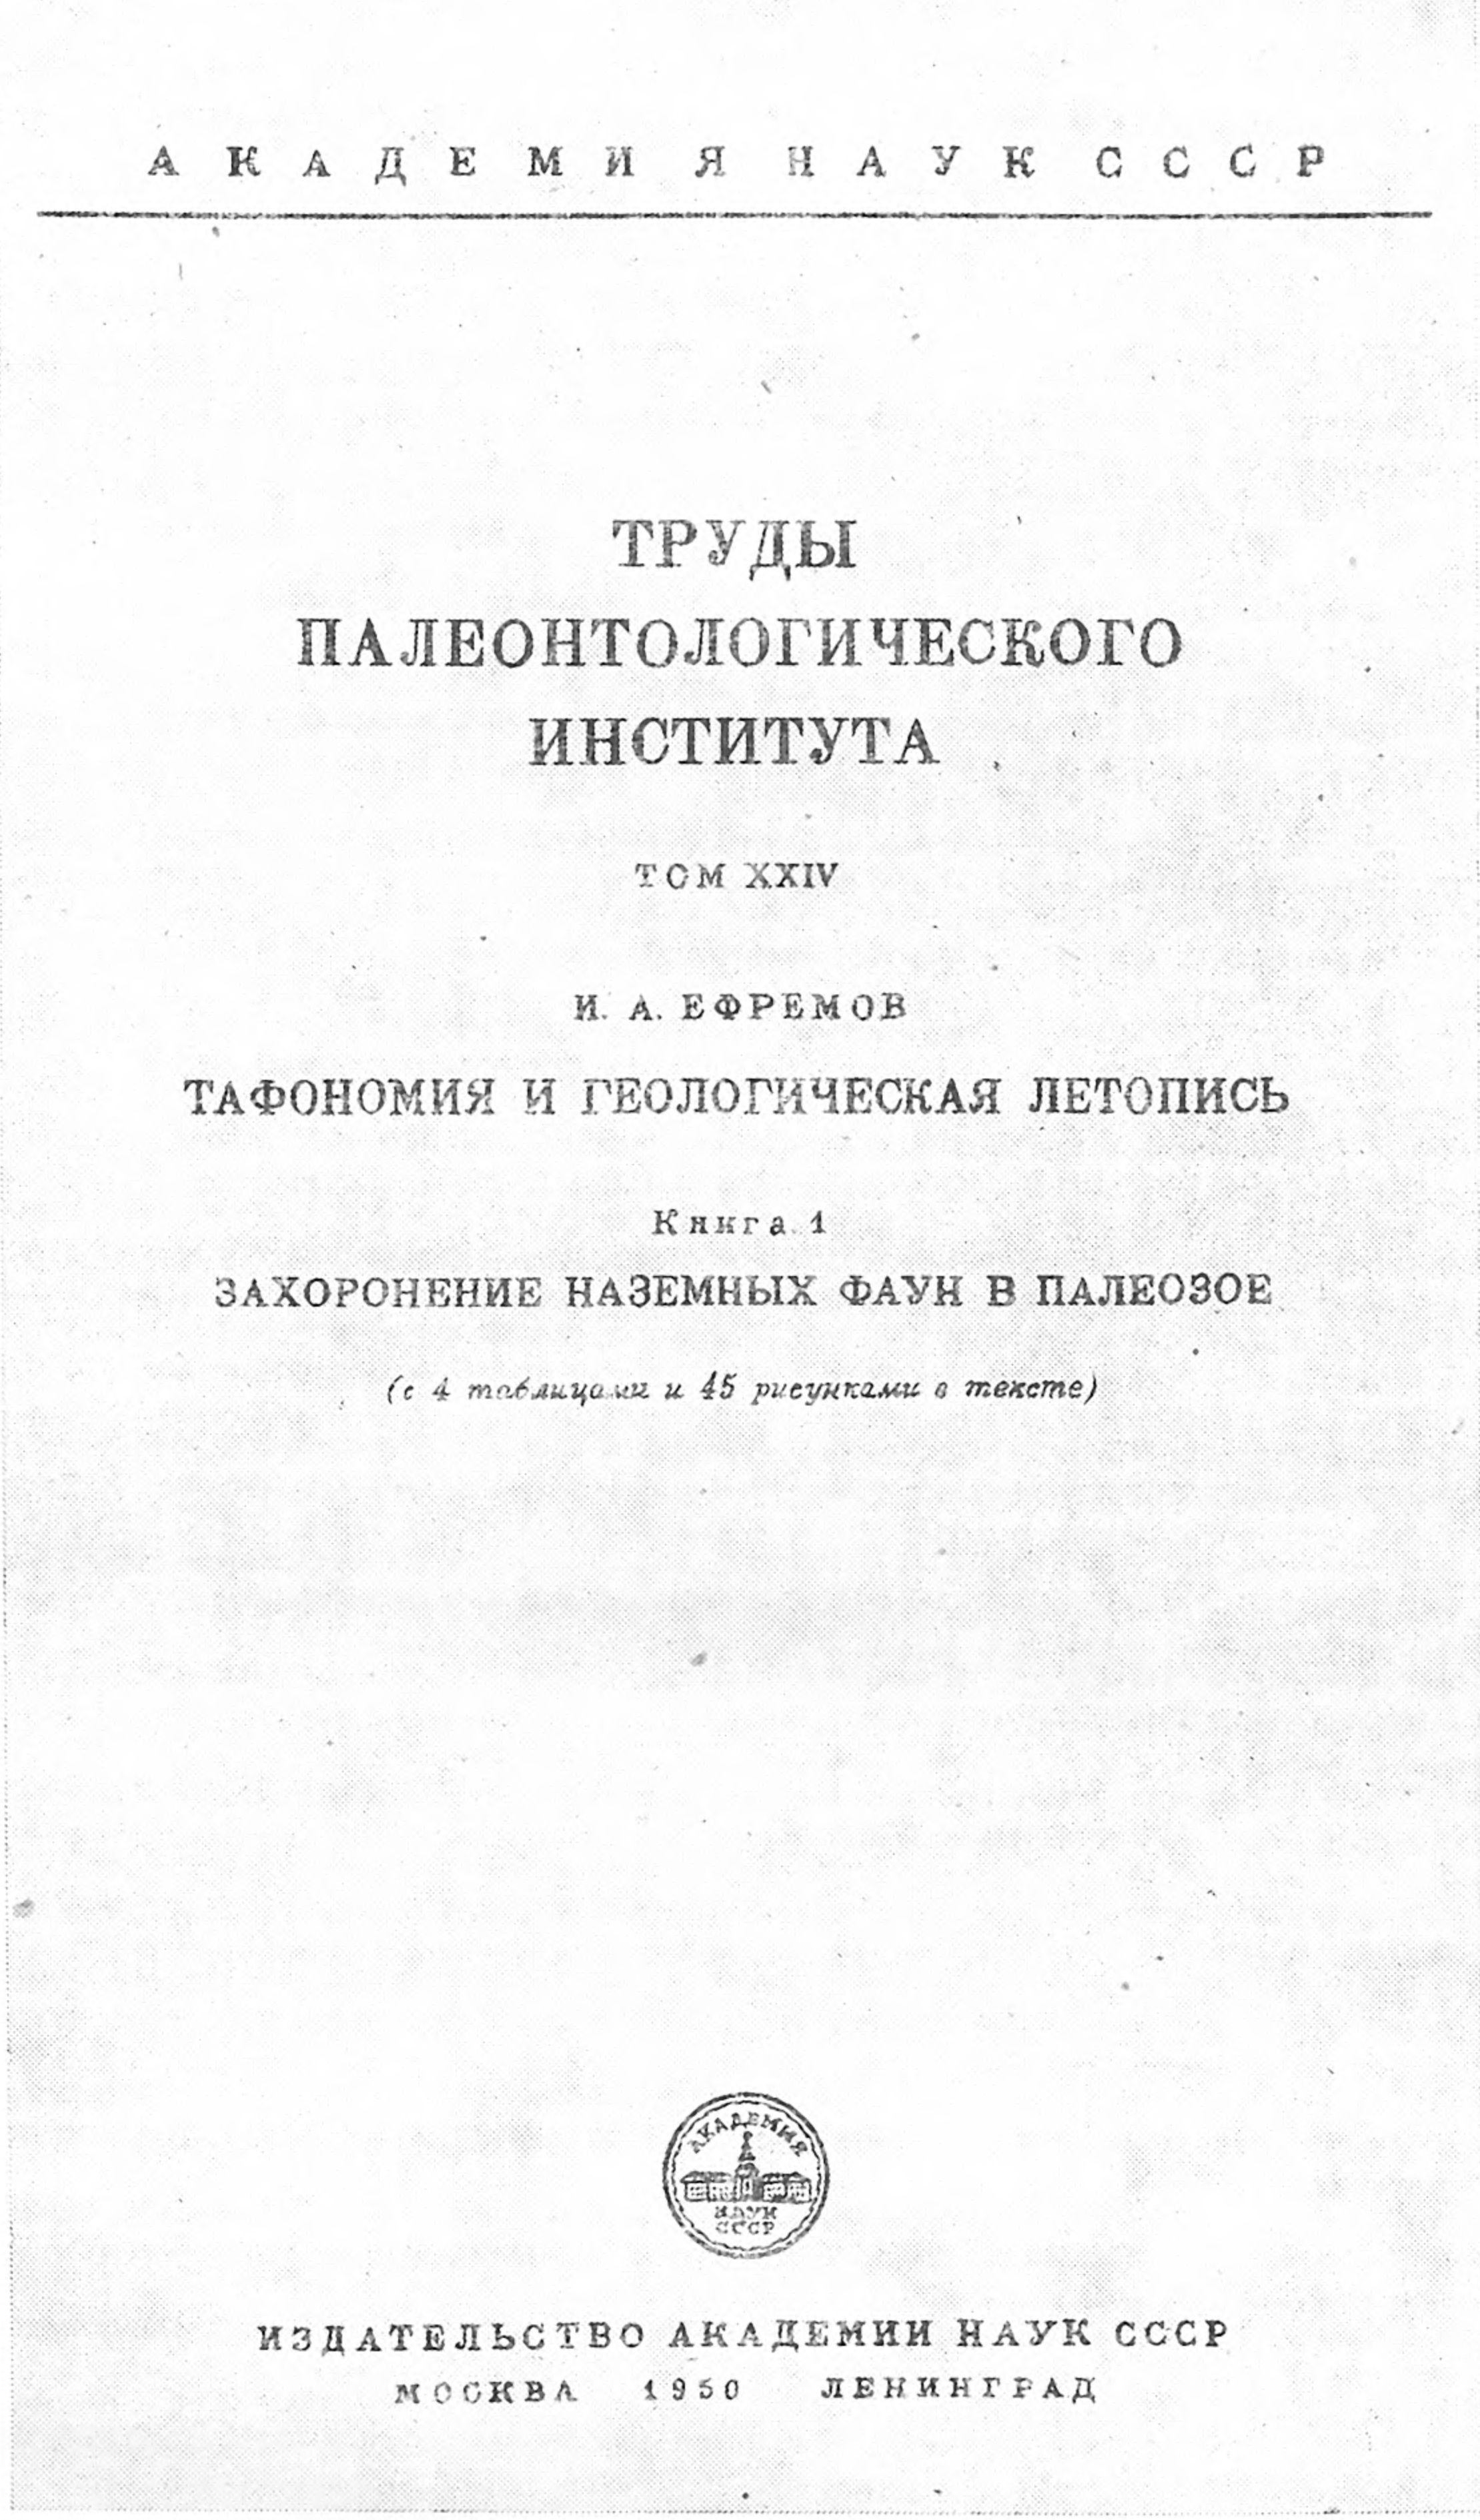 Титульный лист книги «Тафономия и геологическая летопись»